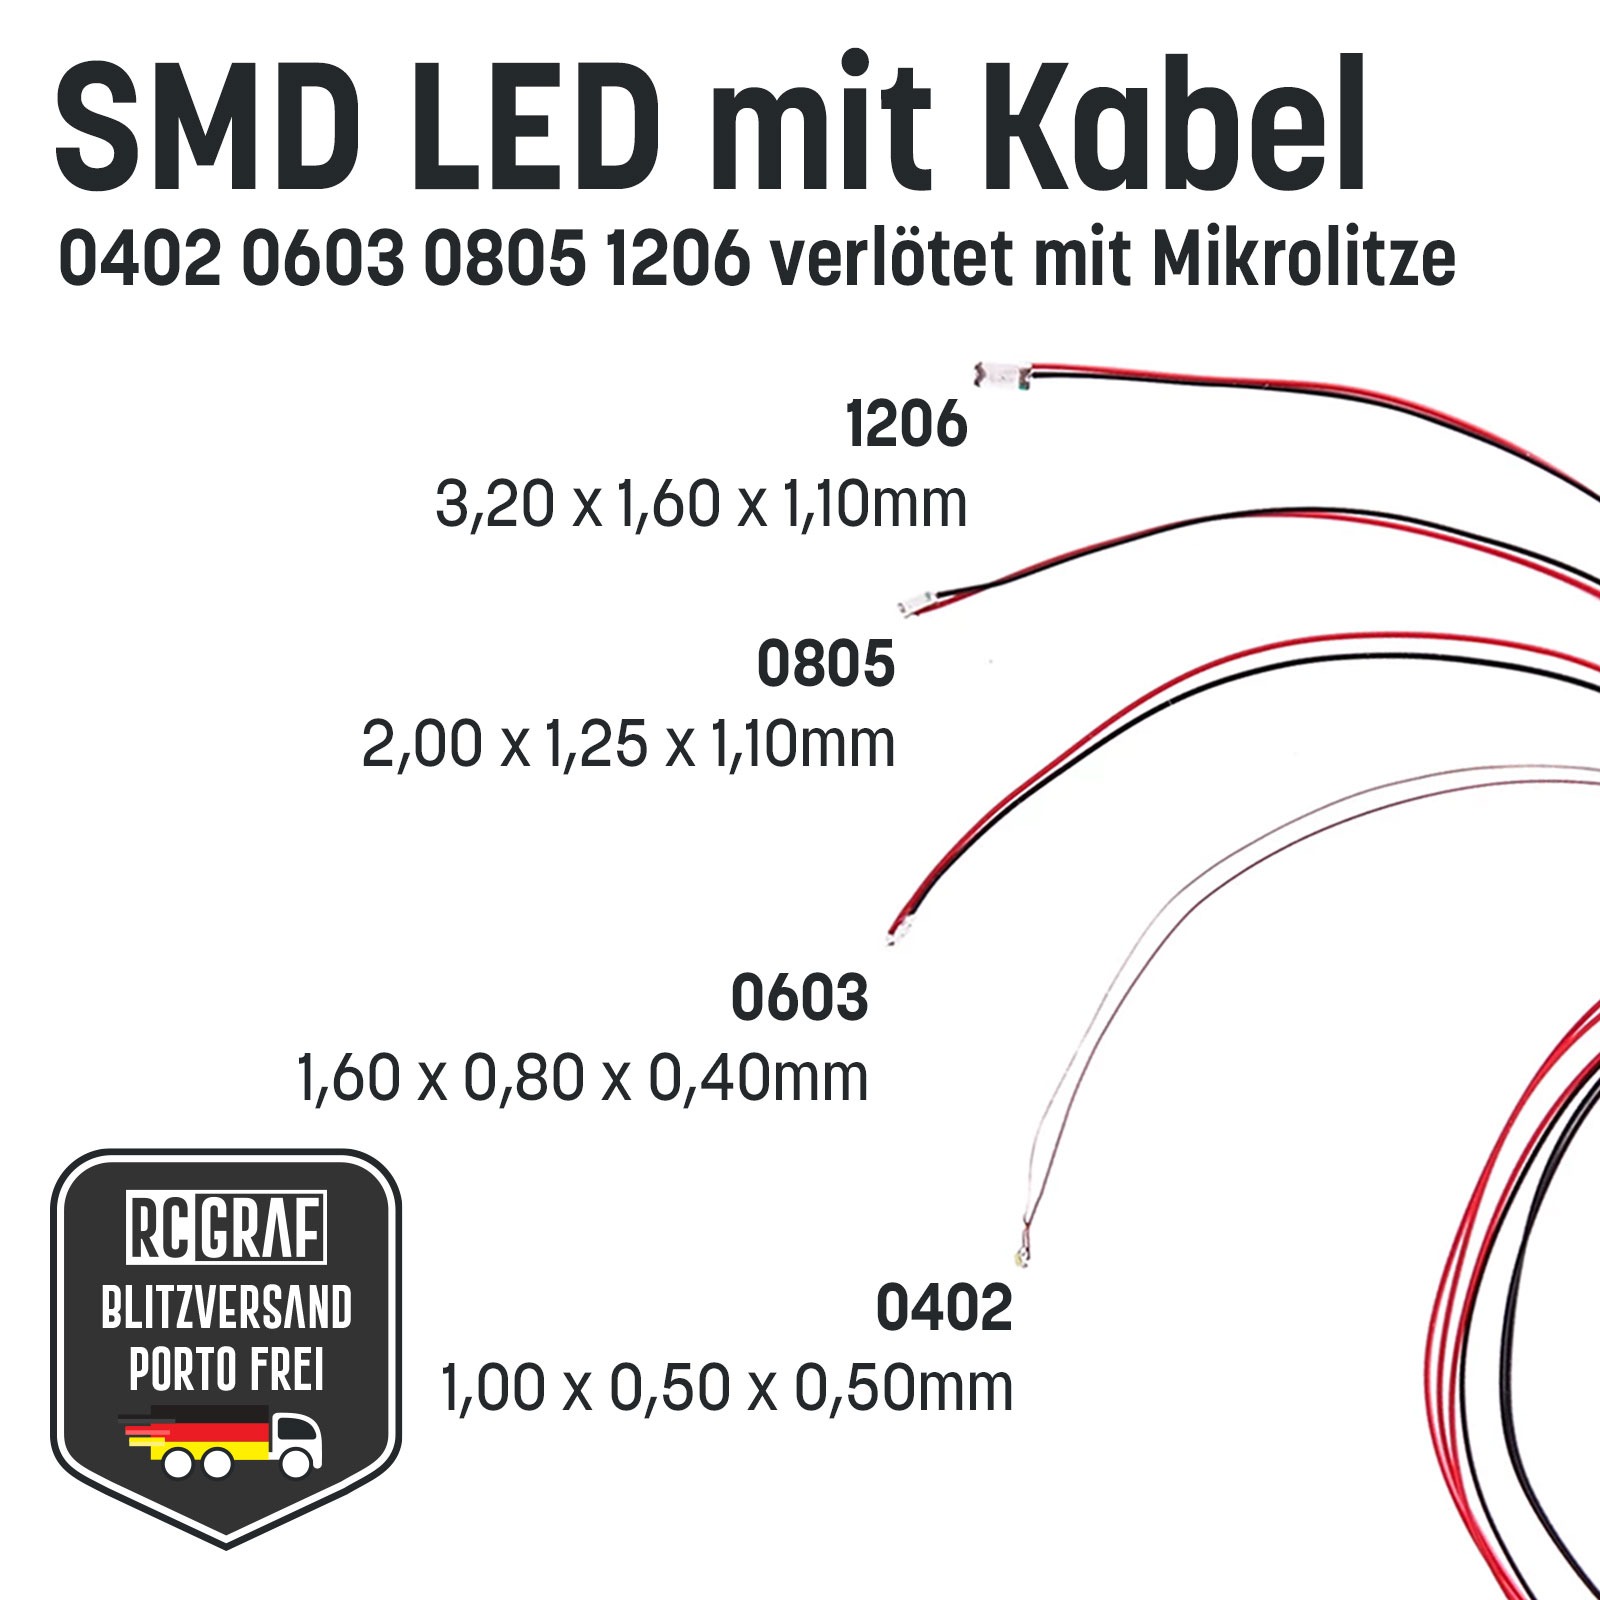 SMD LED 0805 Microlitze 30cm verlötet 10